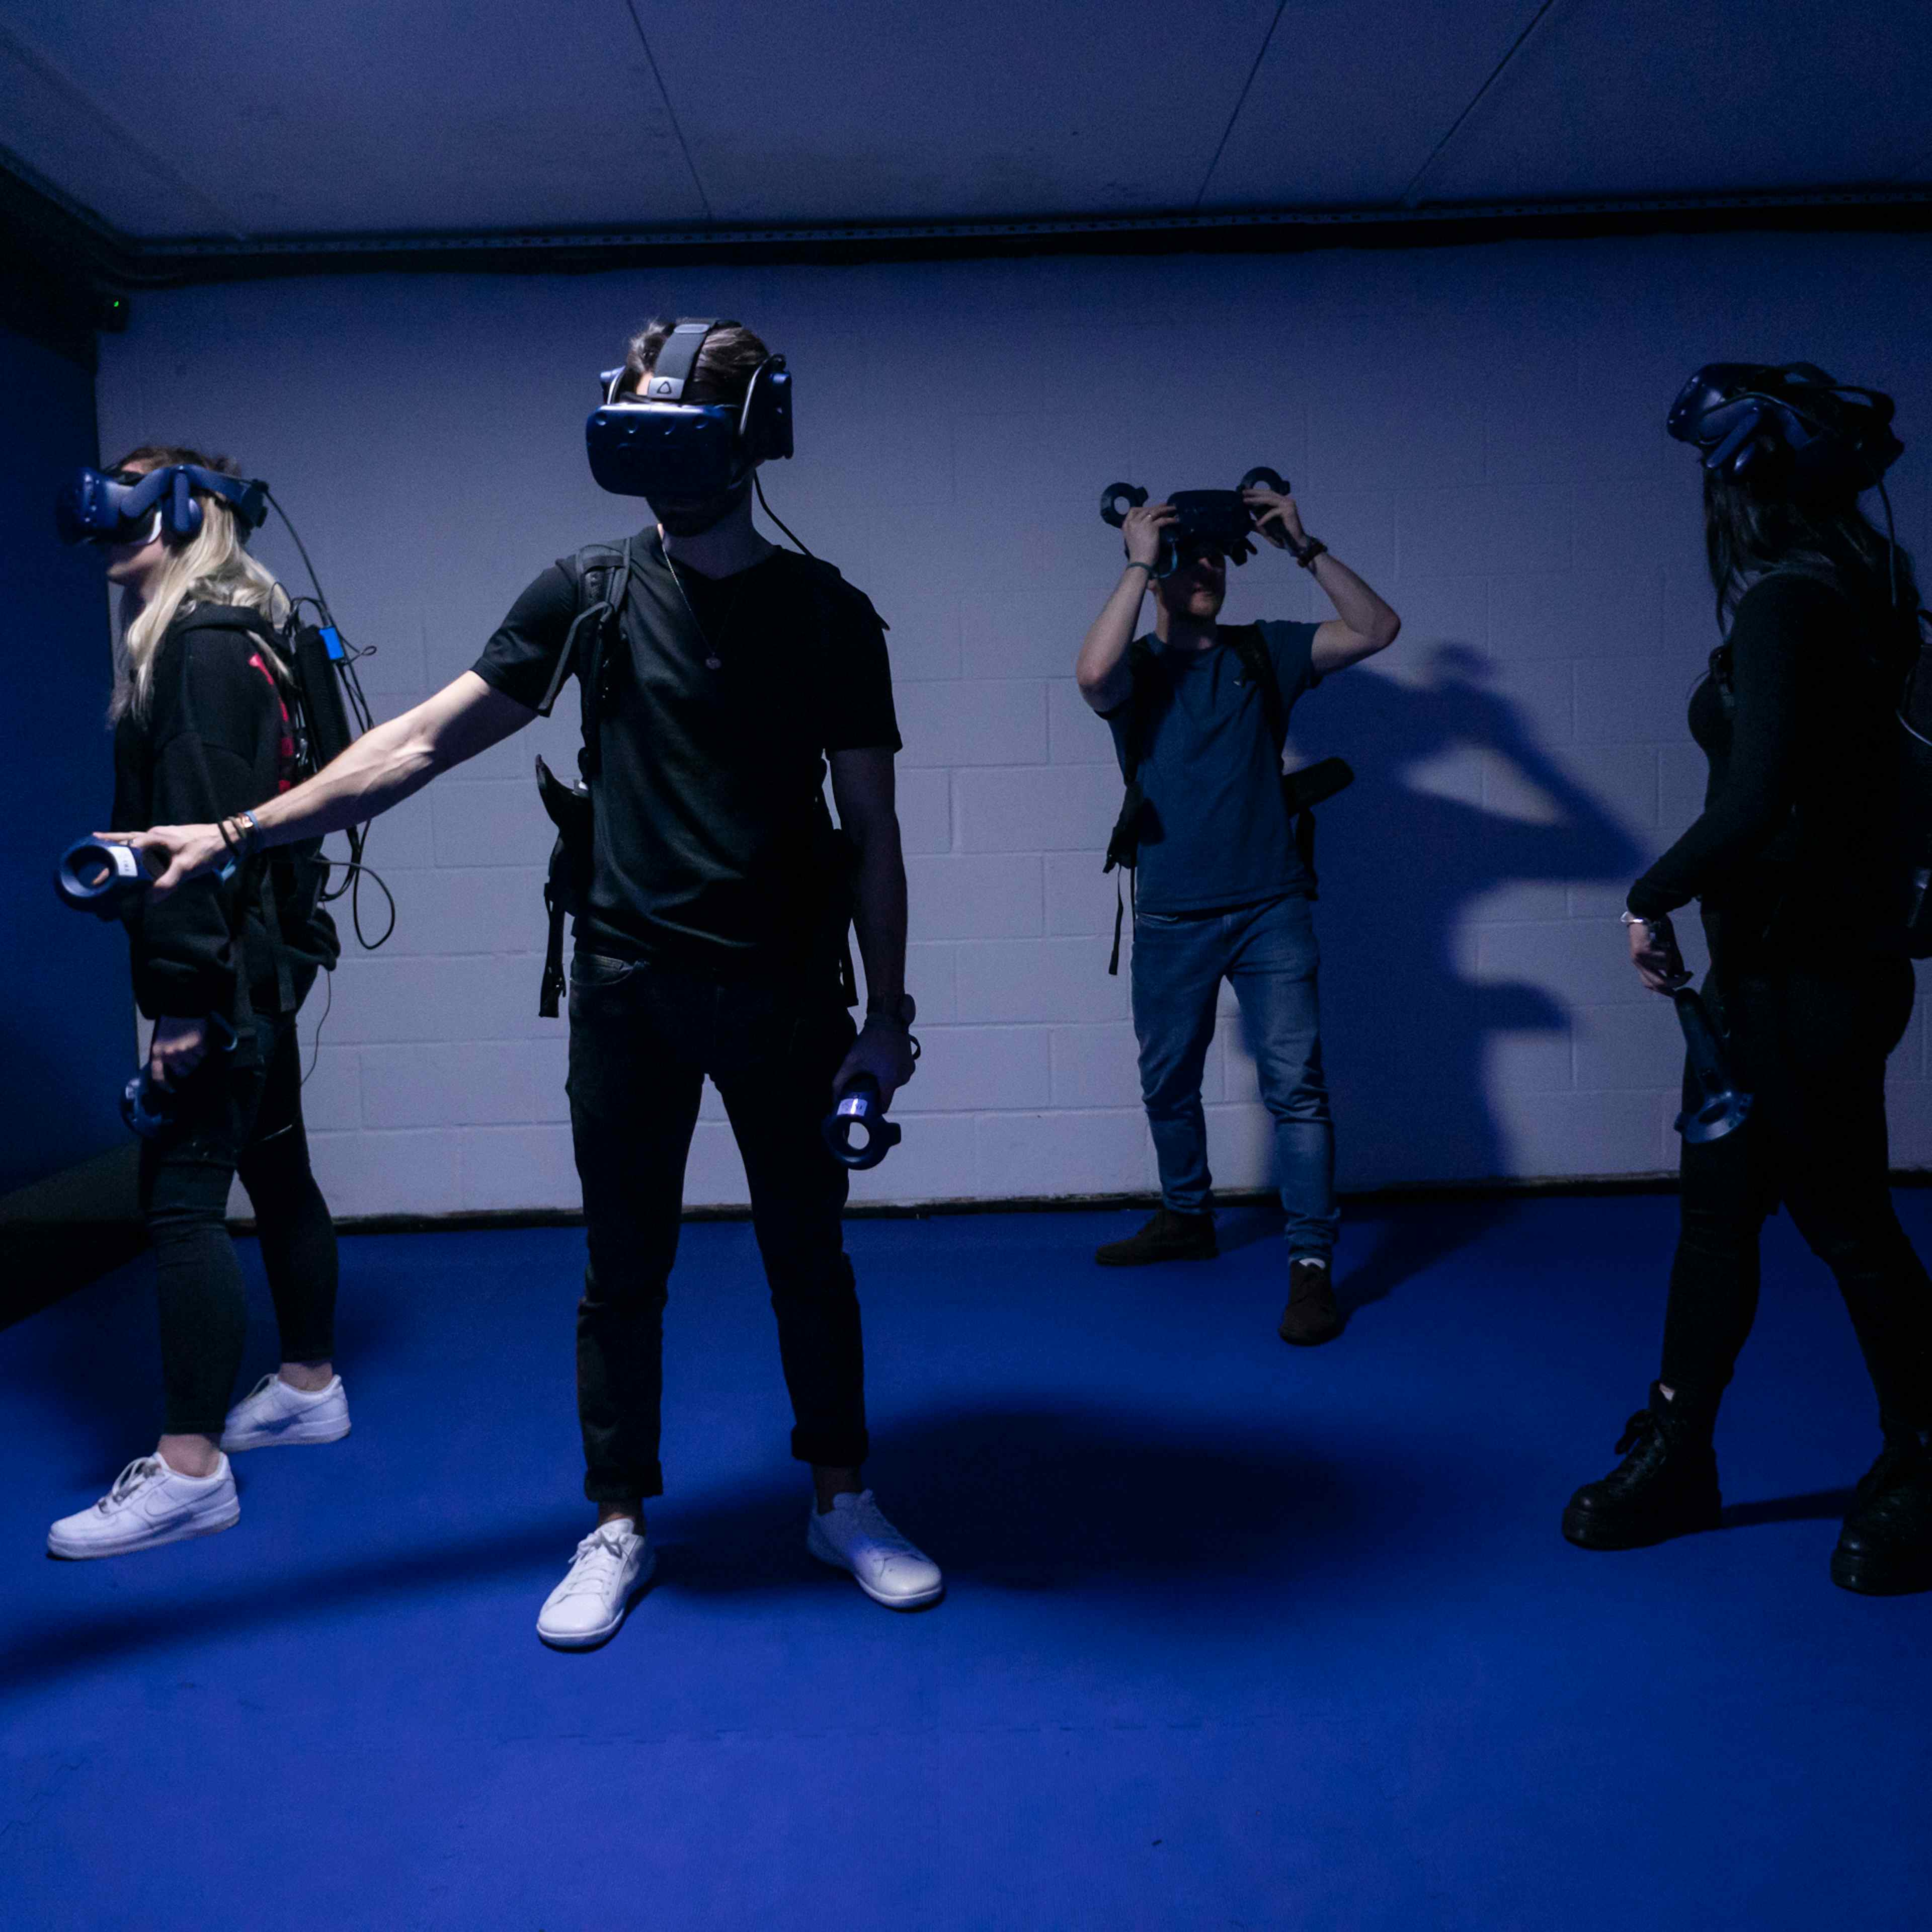 DNA VR Camden - DNA Virtual Reality Arcade image 2